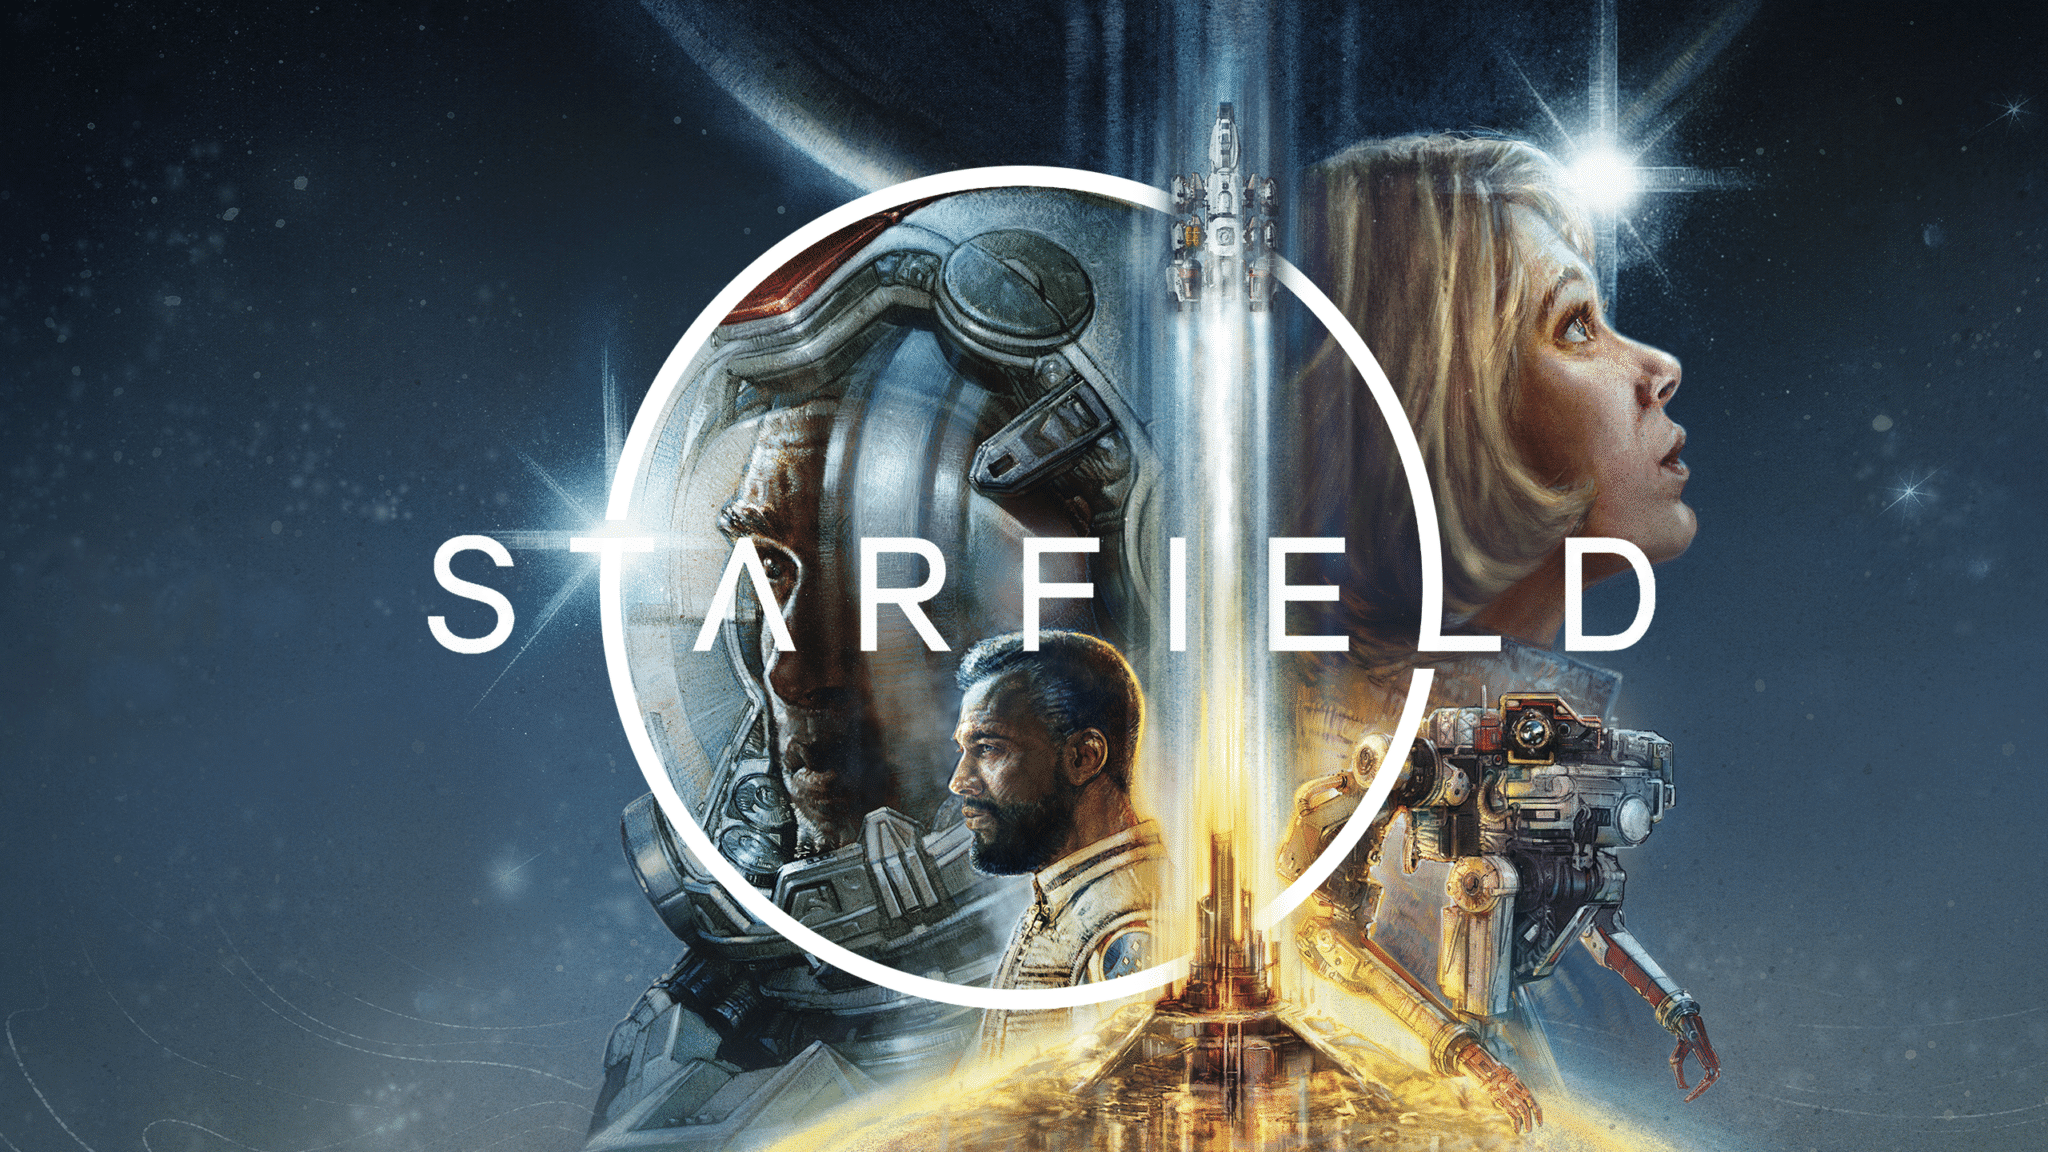 Starfield | Novo vídeo do jogo destaca o mundo aberto e liberdade do game